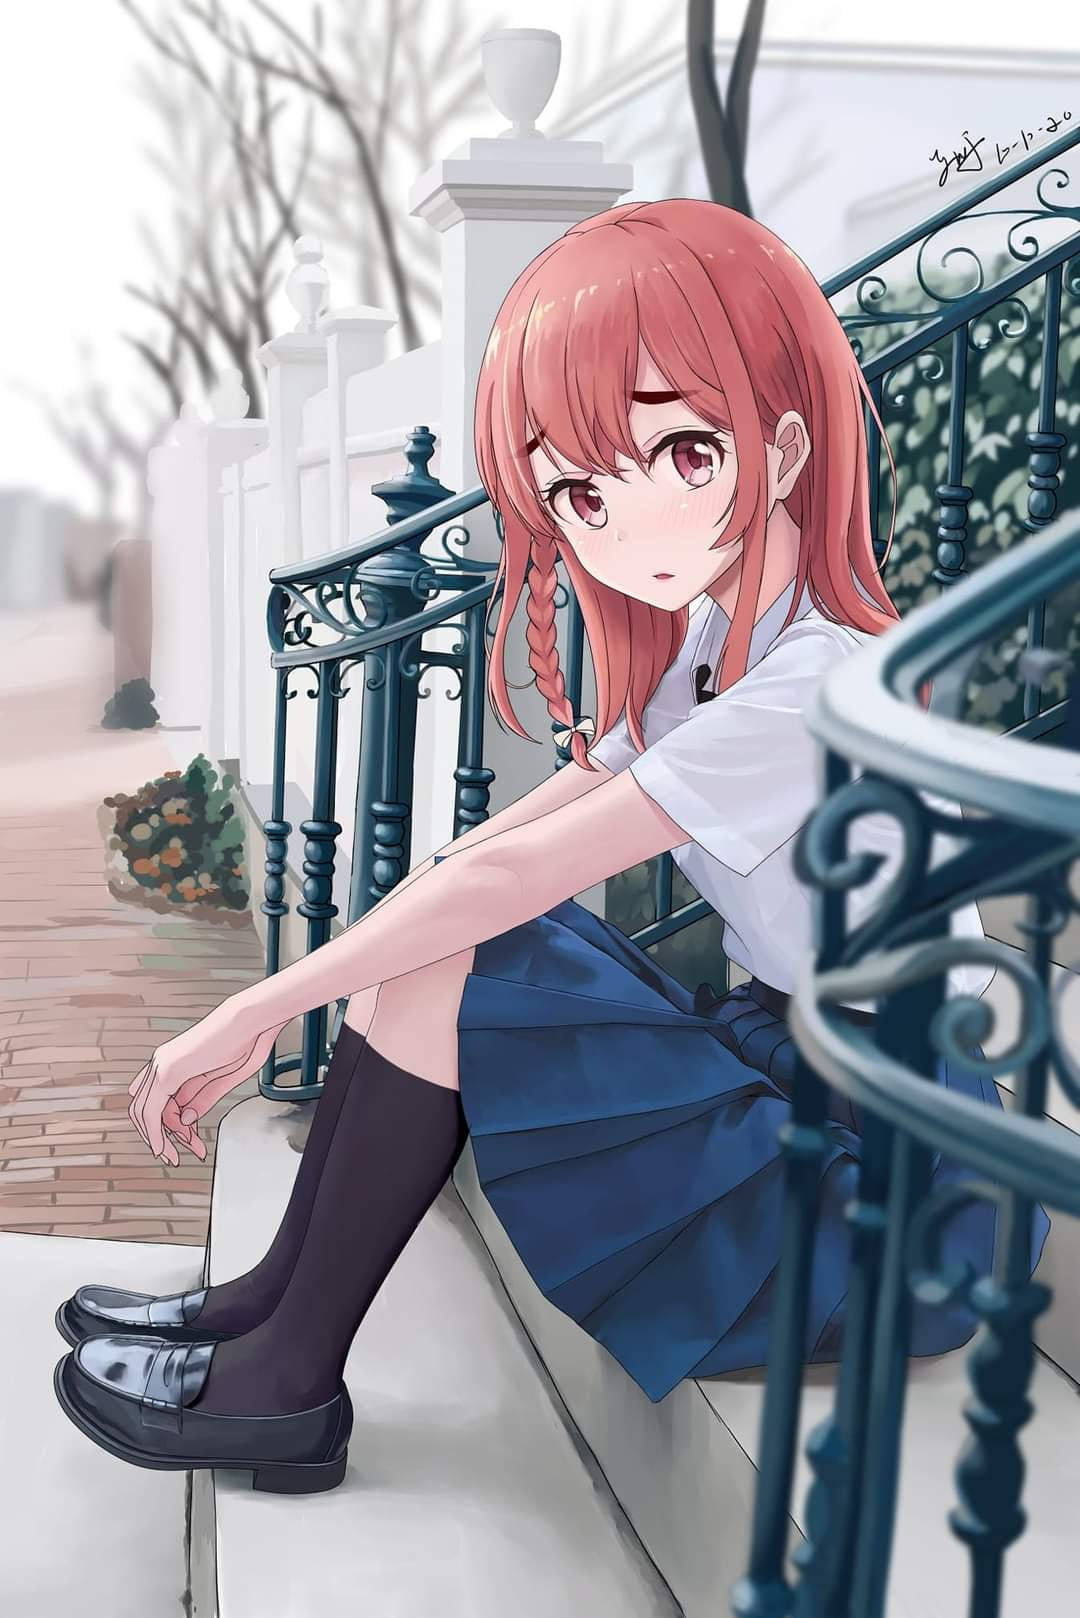 School Girl Rent A Girlfriend Anime Sumi Wallpaper